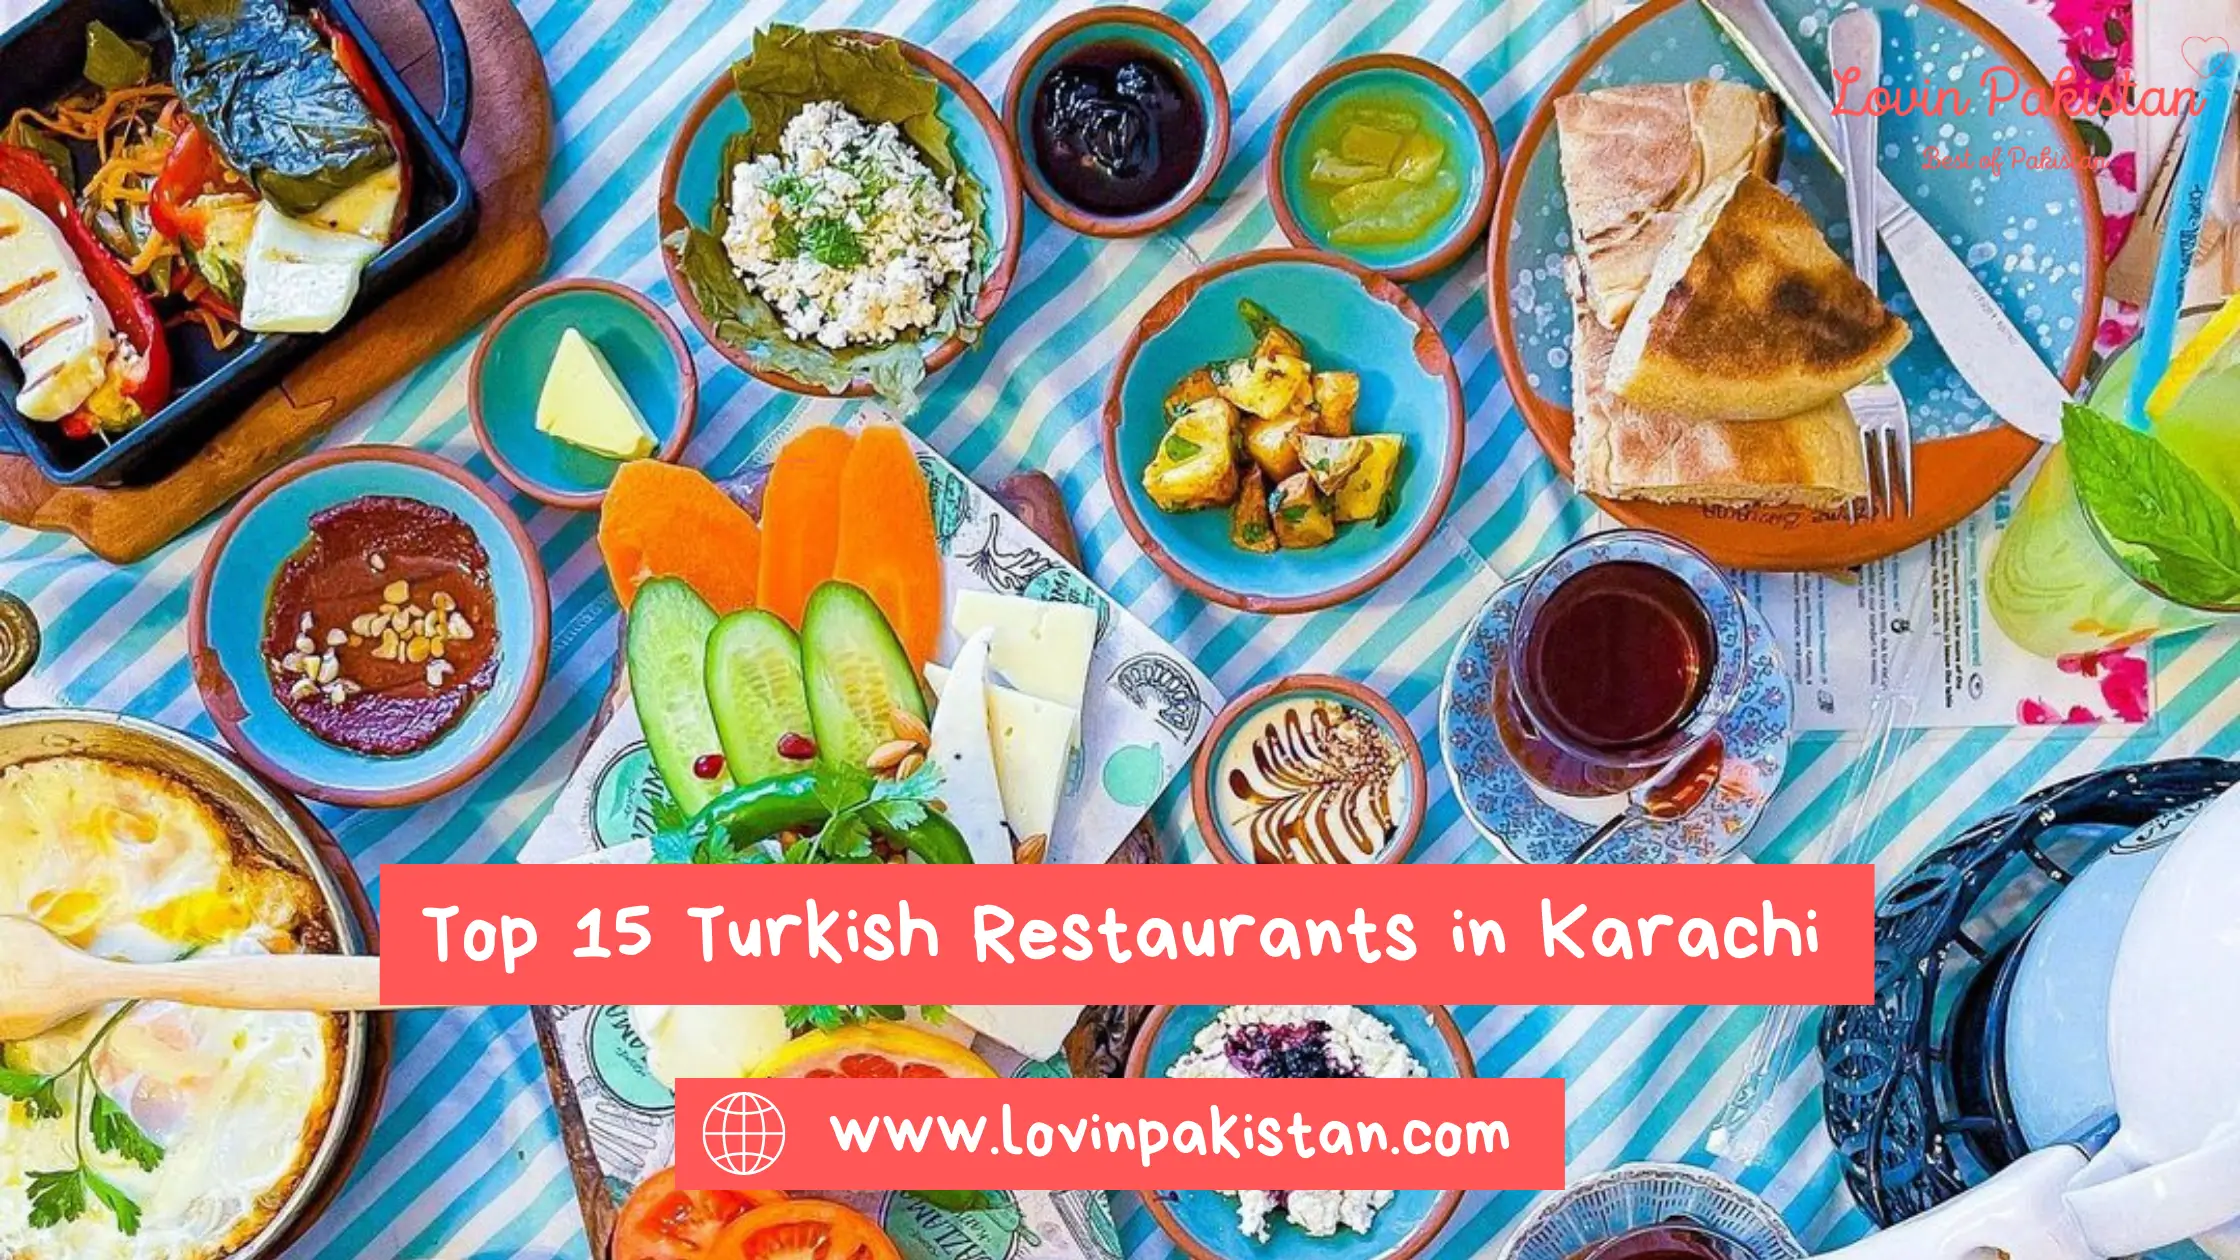 Best Turkish Restaurants in Karachi